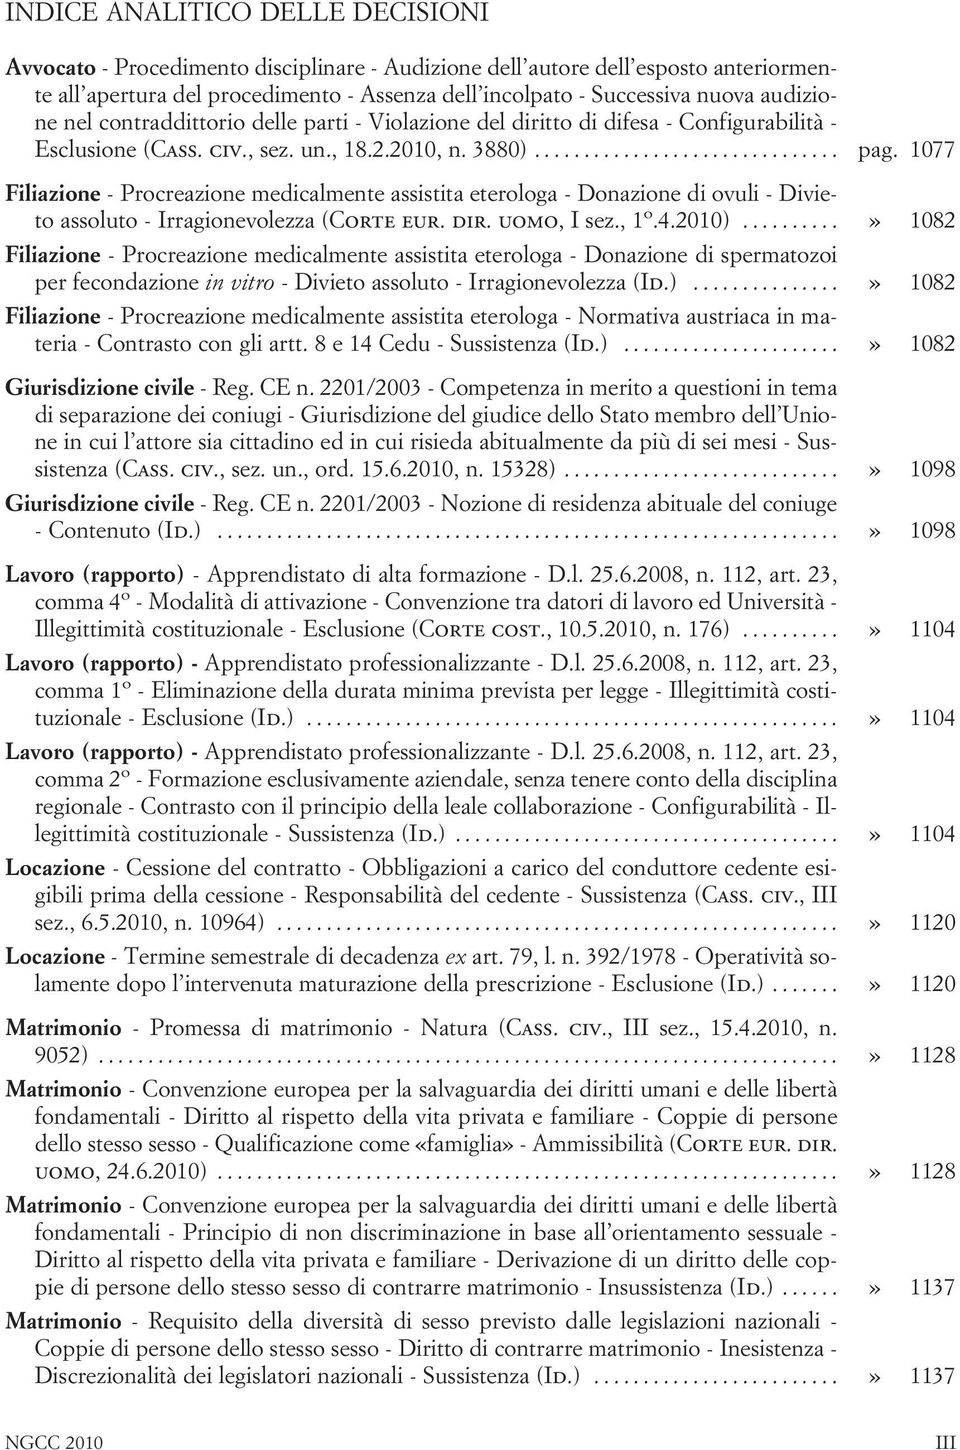 1077 Filiazione - Procreazione medicalmente assistita eterologa - Donazione di ovuli - Divieto assoluto - Irragionevolezza (Corte eur. dir. uomo, I sez., 1 o.4.2010).